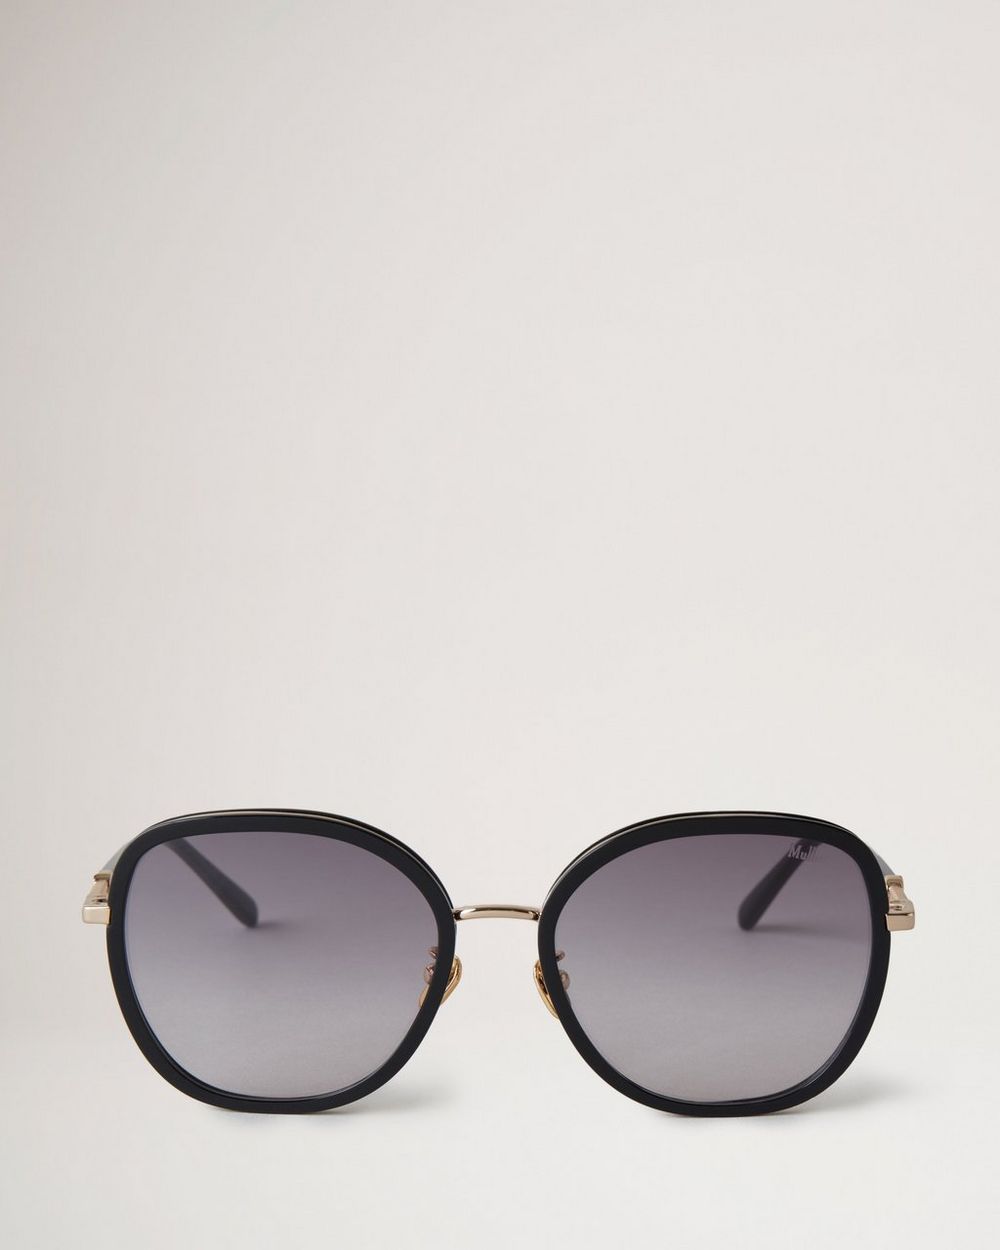 Gradient Black Square Oversized Sunglasses Women Frace Brand